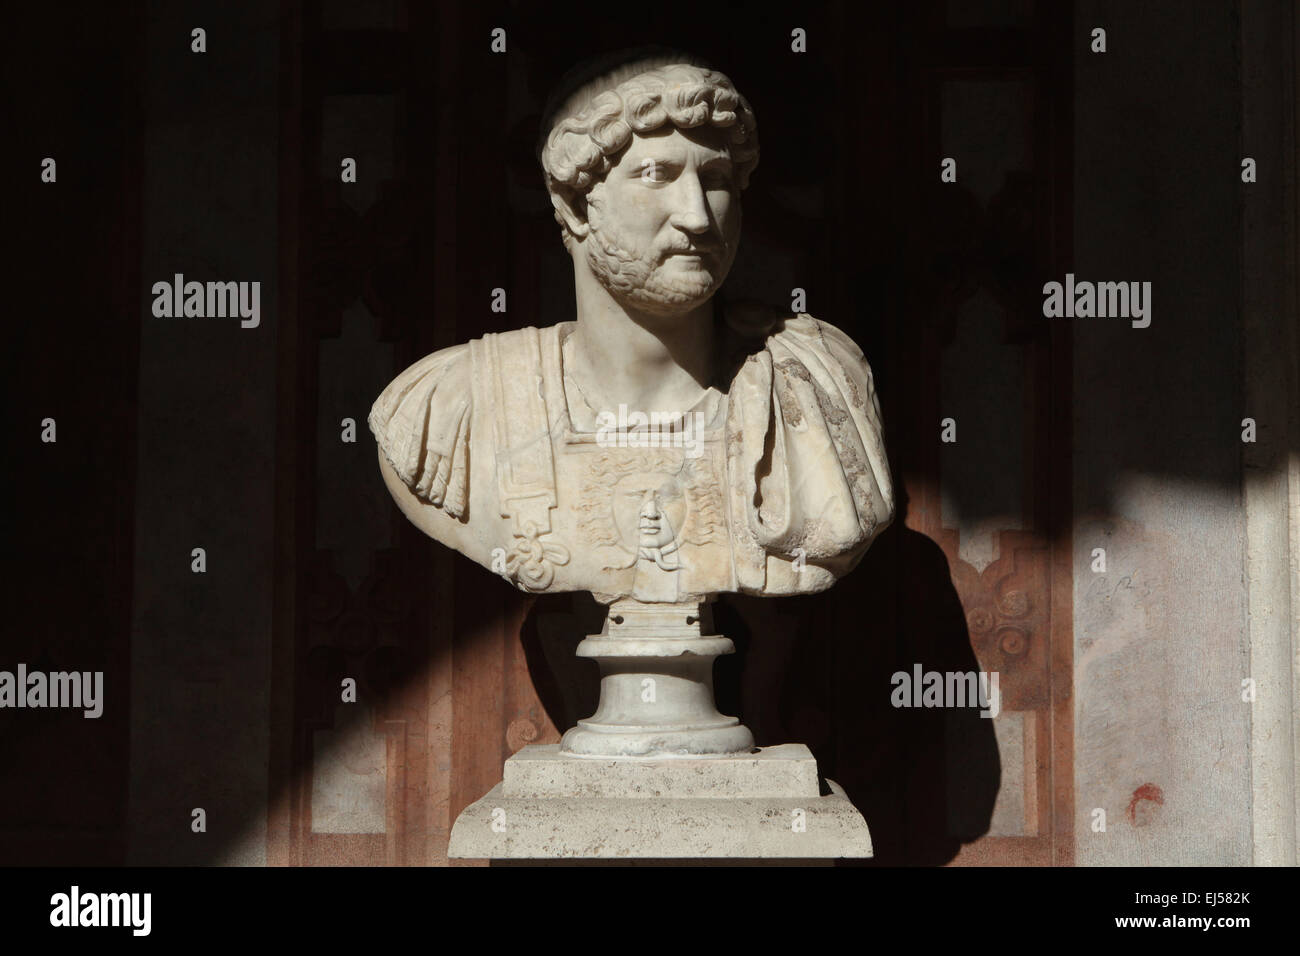 L'empereur romain Hadrien. Buste en marbre romain du 2e siècle AD. Musée National Romain, Palais Altemps, Rome, Italie. Banque D'Images